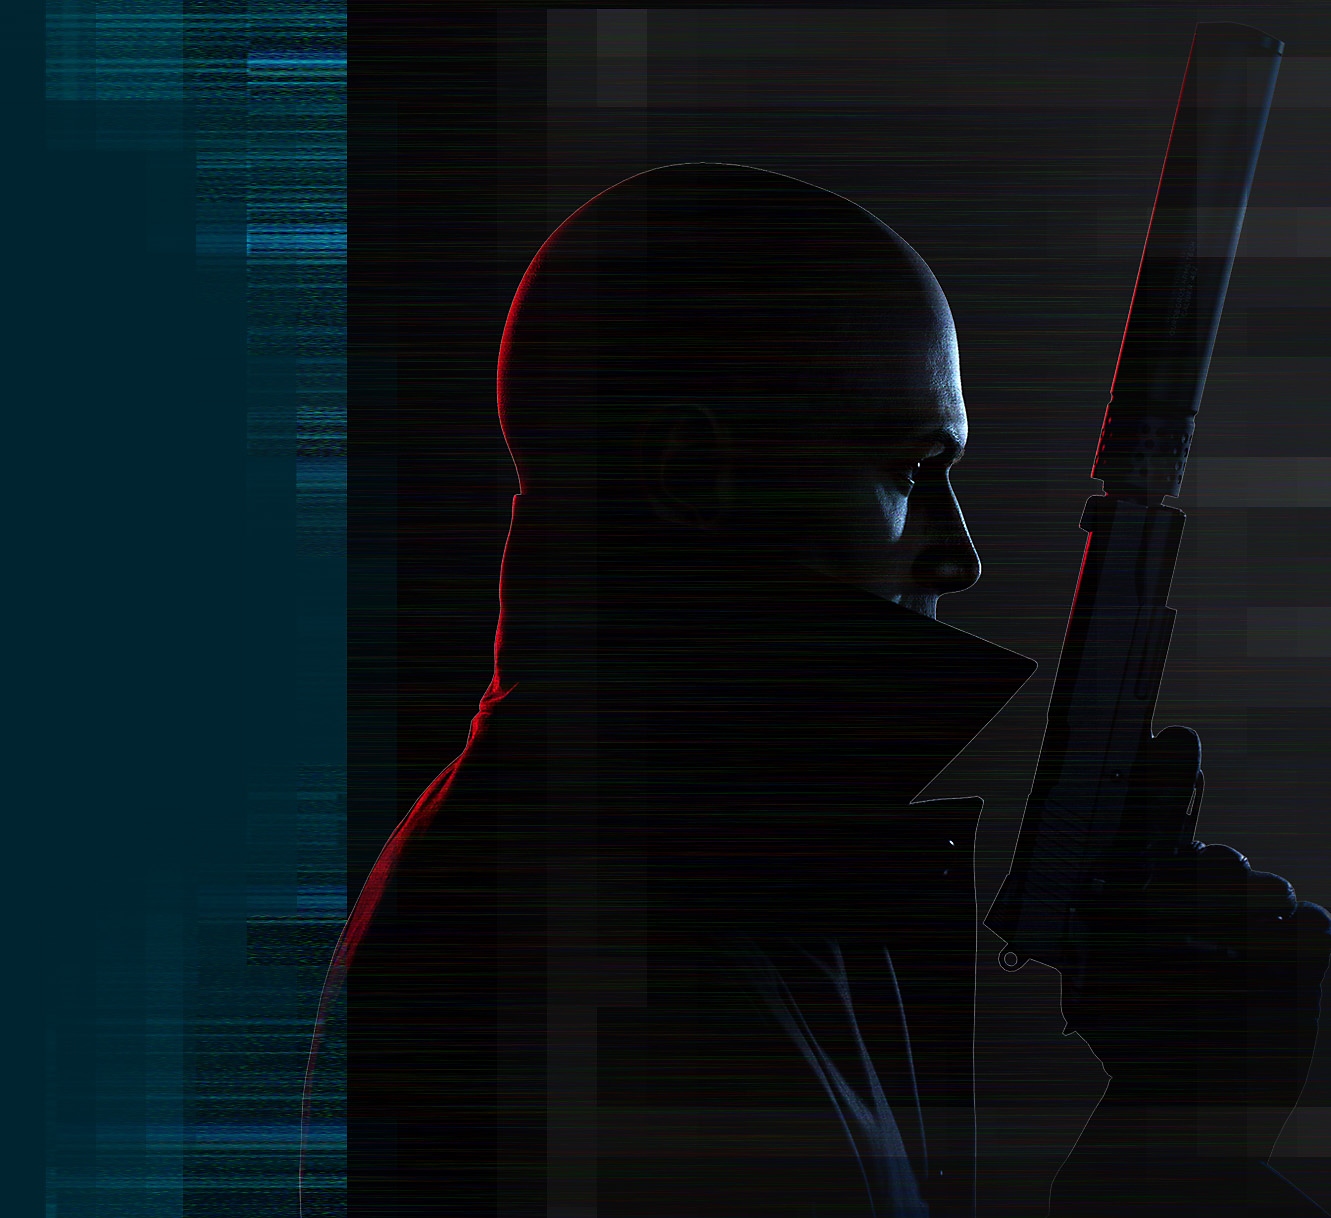 Umjetnički prikaz lika „Agent 47“ iz igre Hitman 3 s pištoljem s prigušivačem u ruci